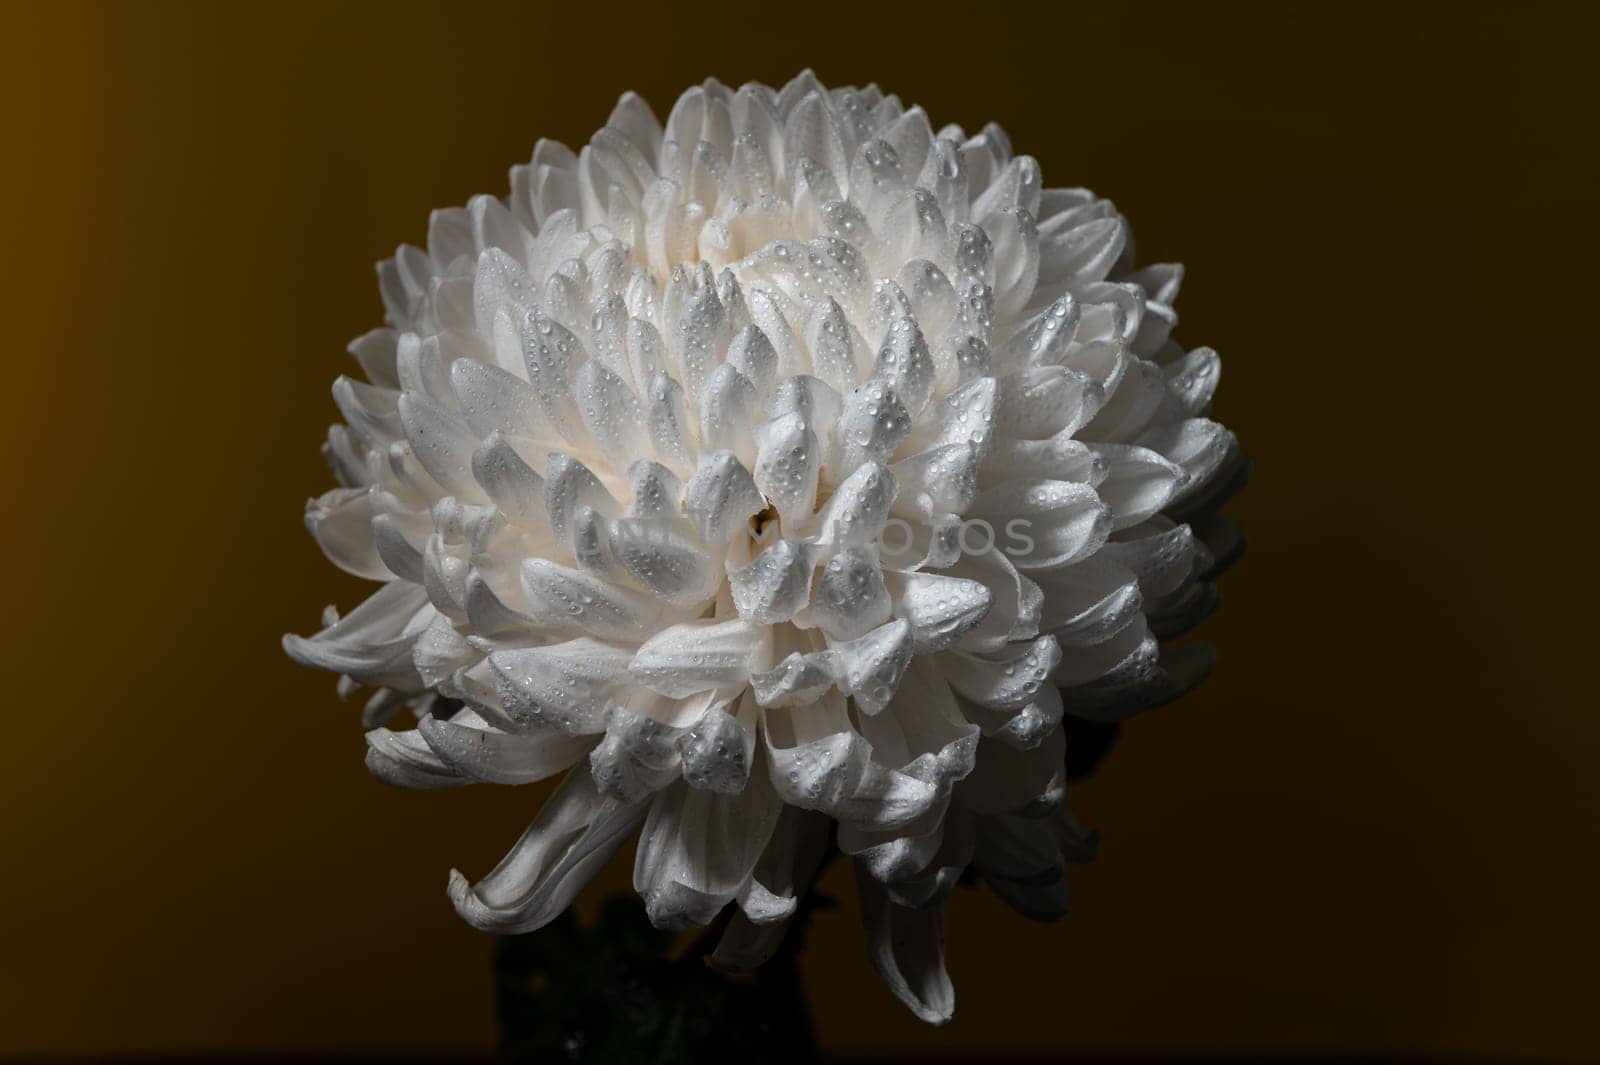 White chrysanthemum on a dark background. Flower head close-up